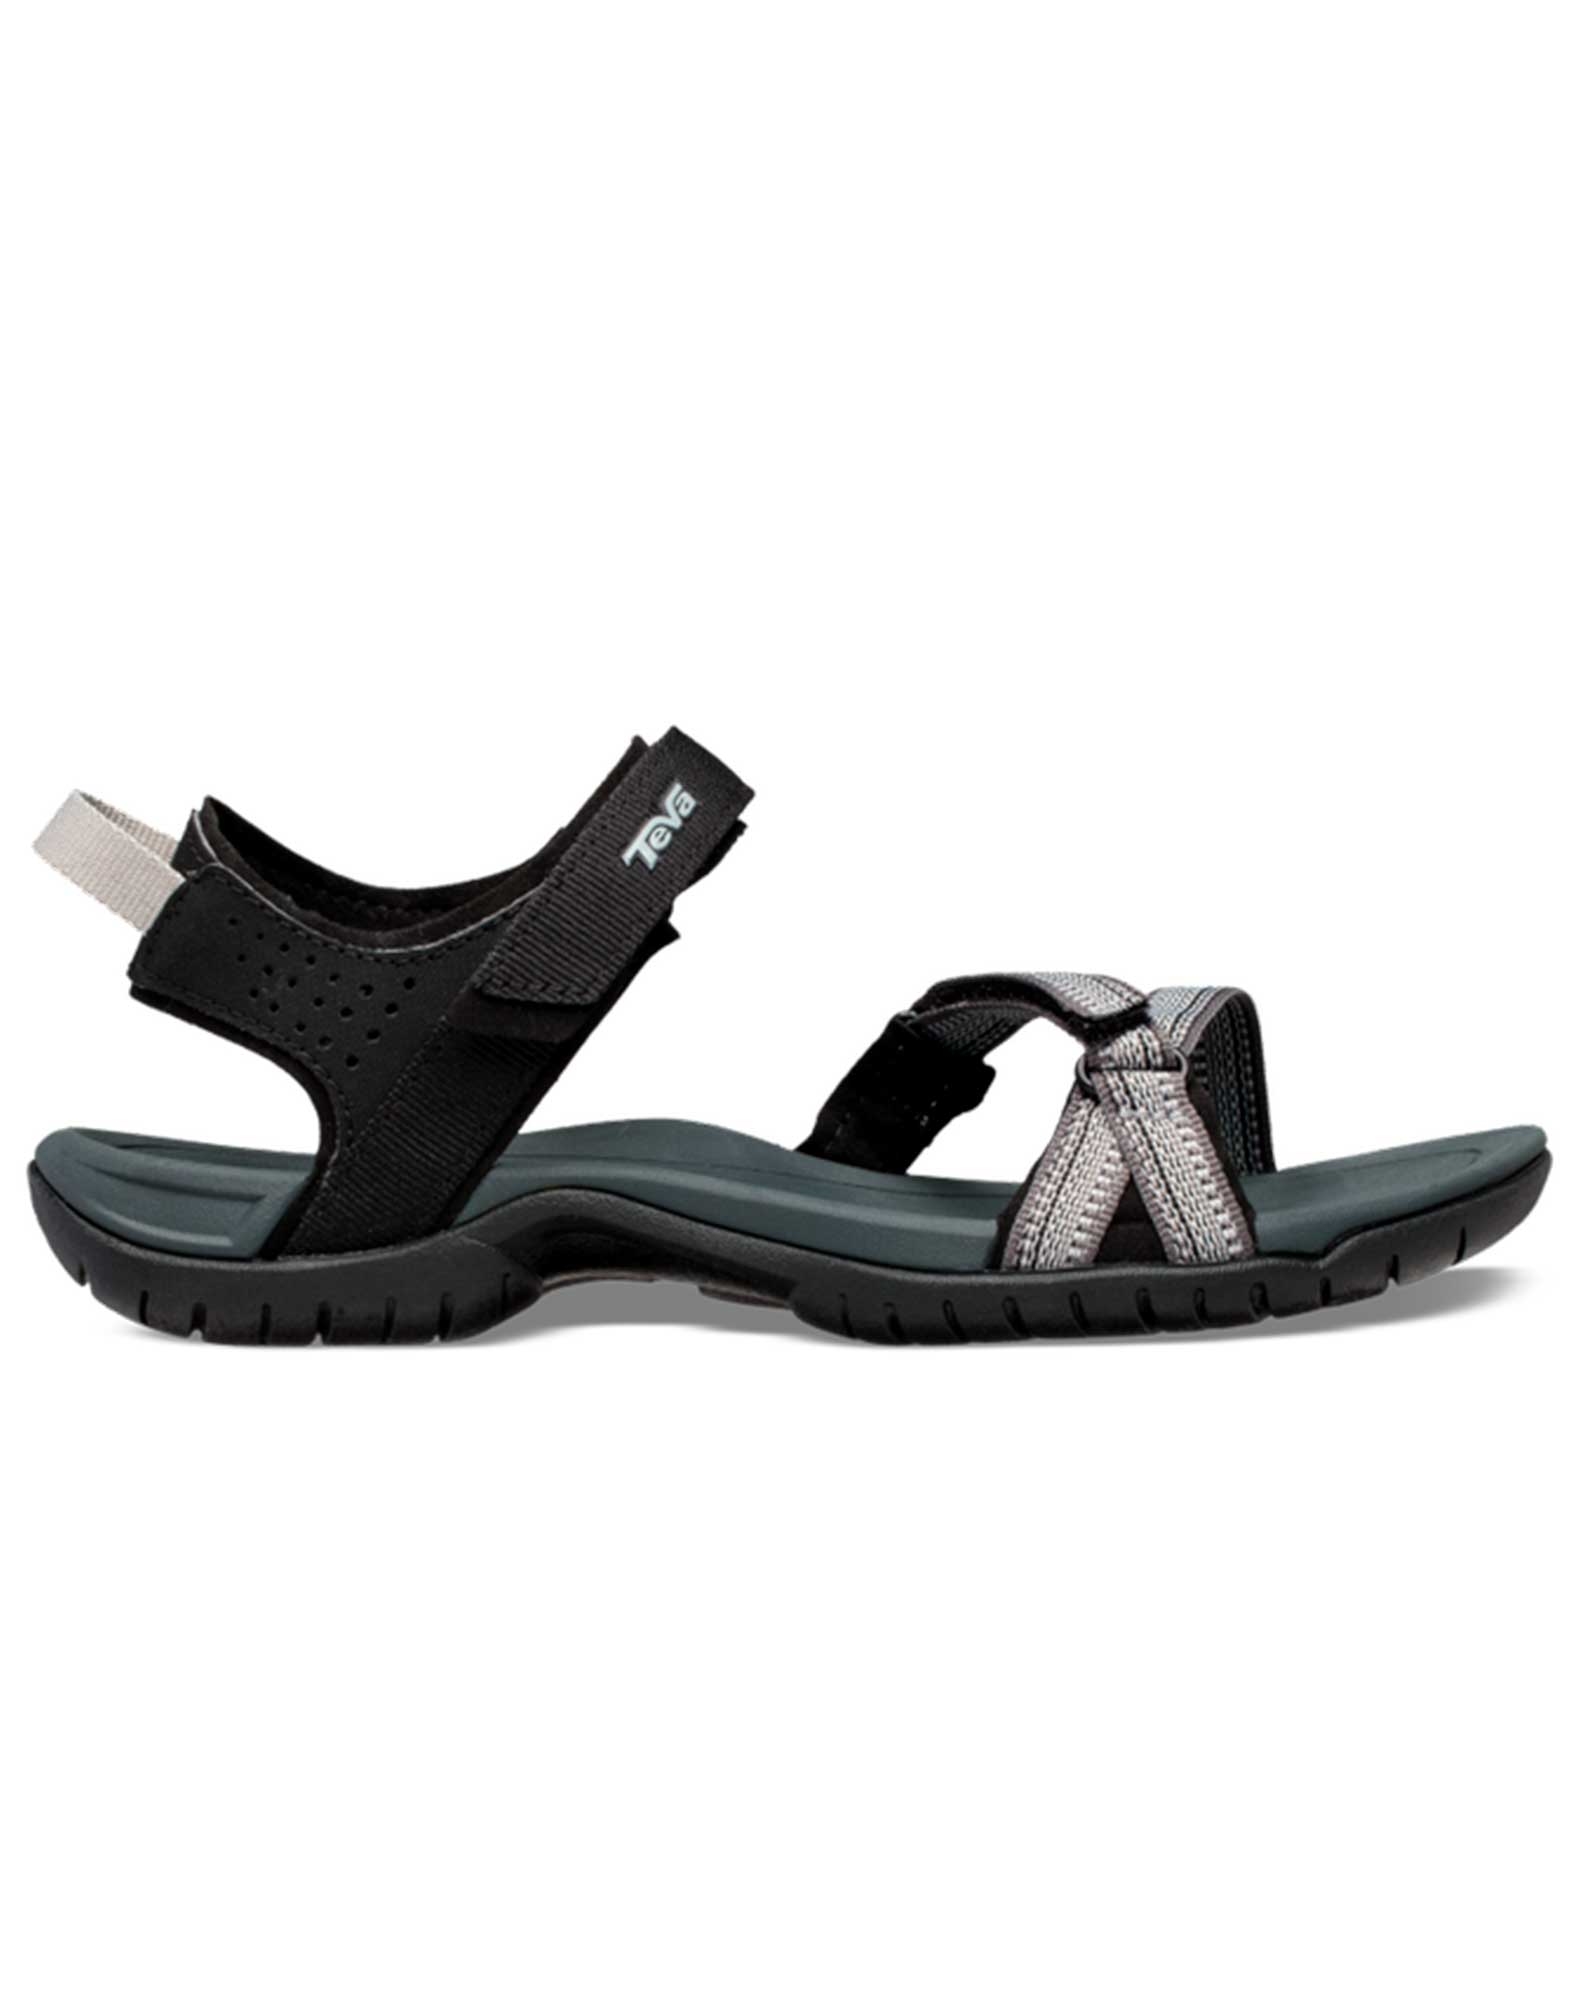 Køb TEVA sandaler til dame sort-hvid